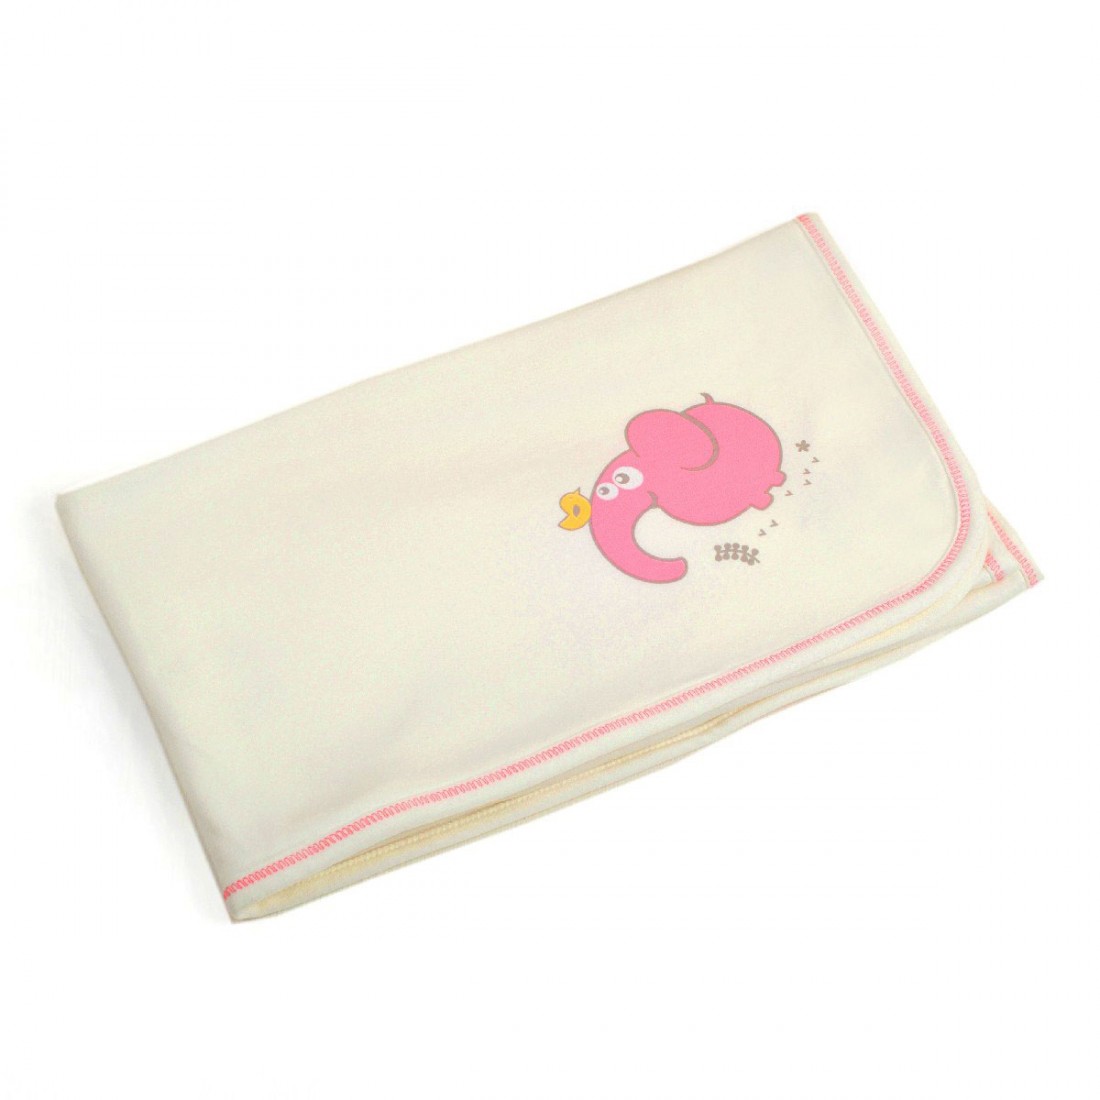 OrganicEra Organic Baby Blanket, Ecru & Pink